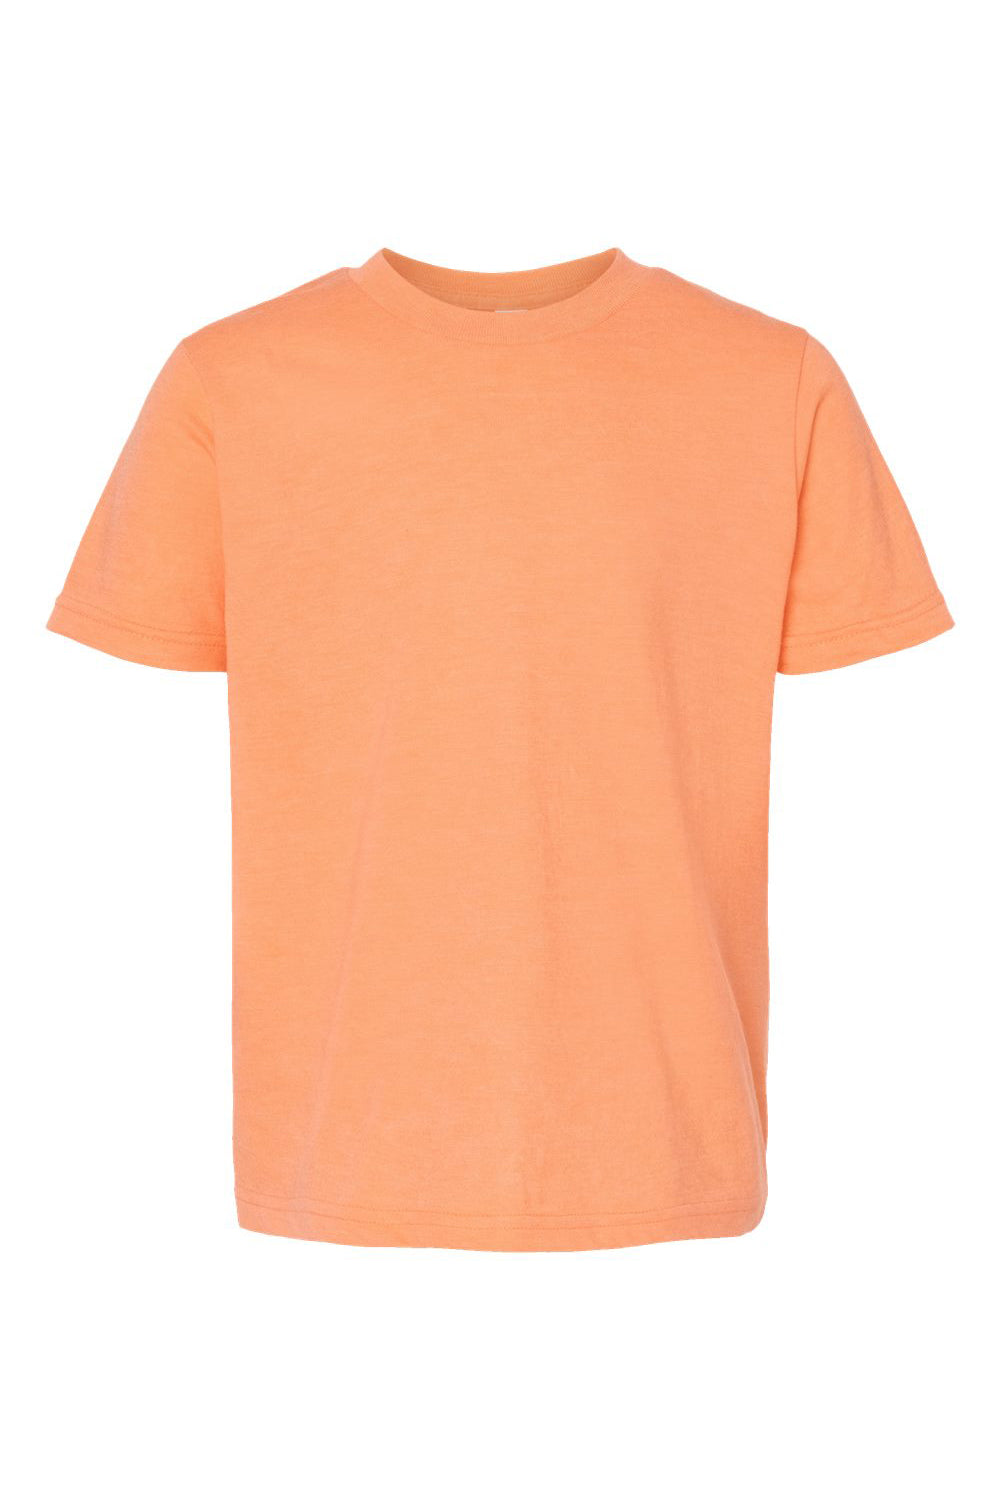 Tultex 235 Youth Fine Jersey Short Sleeve Crewneck T-Shirt Heather Cantaloupe Orange Flat Front